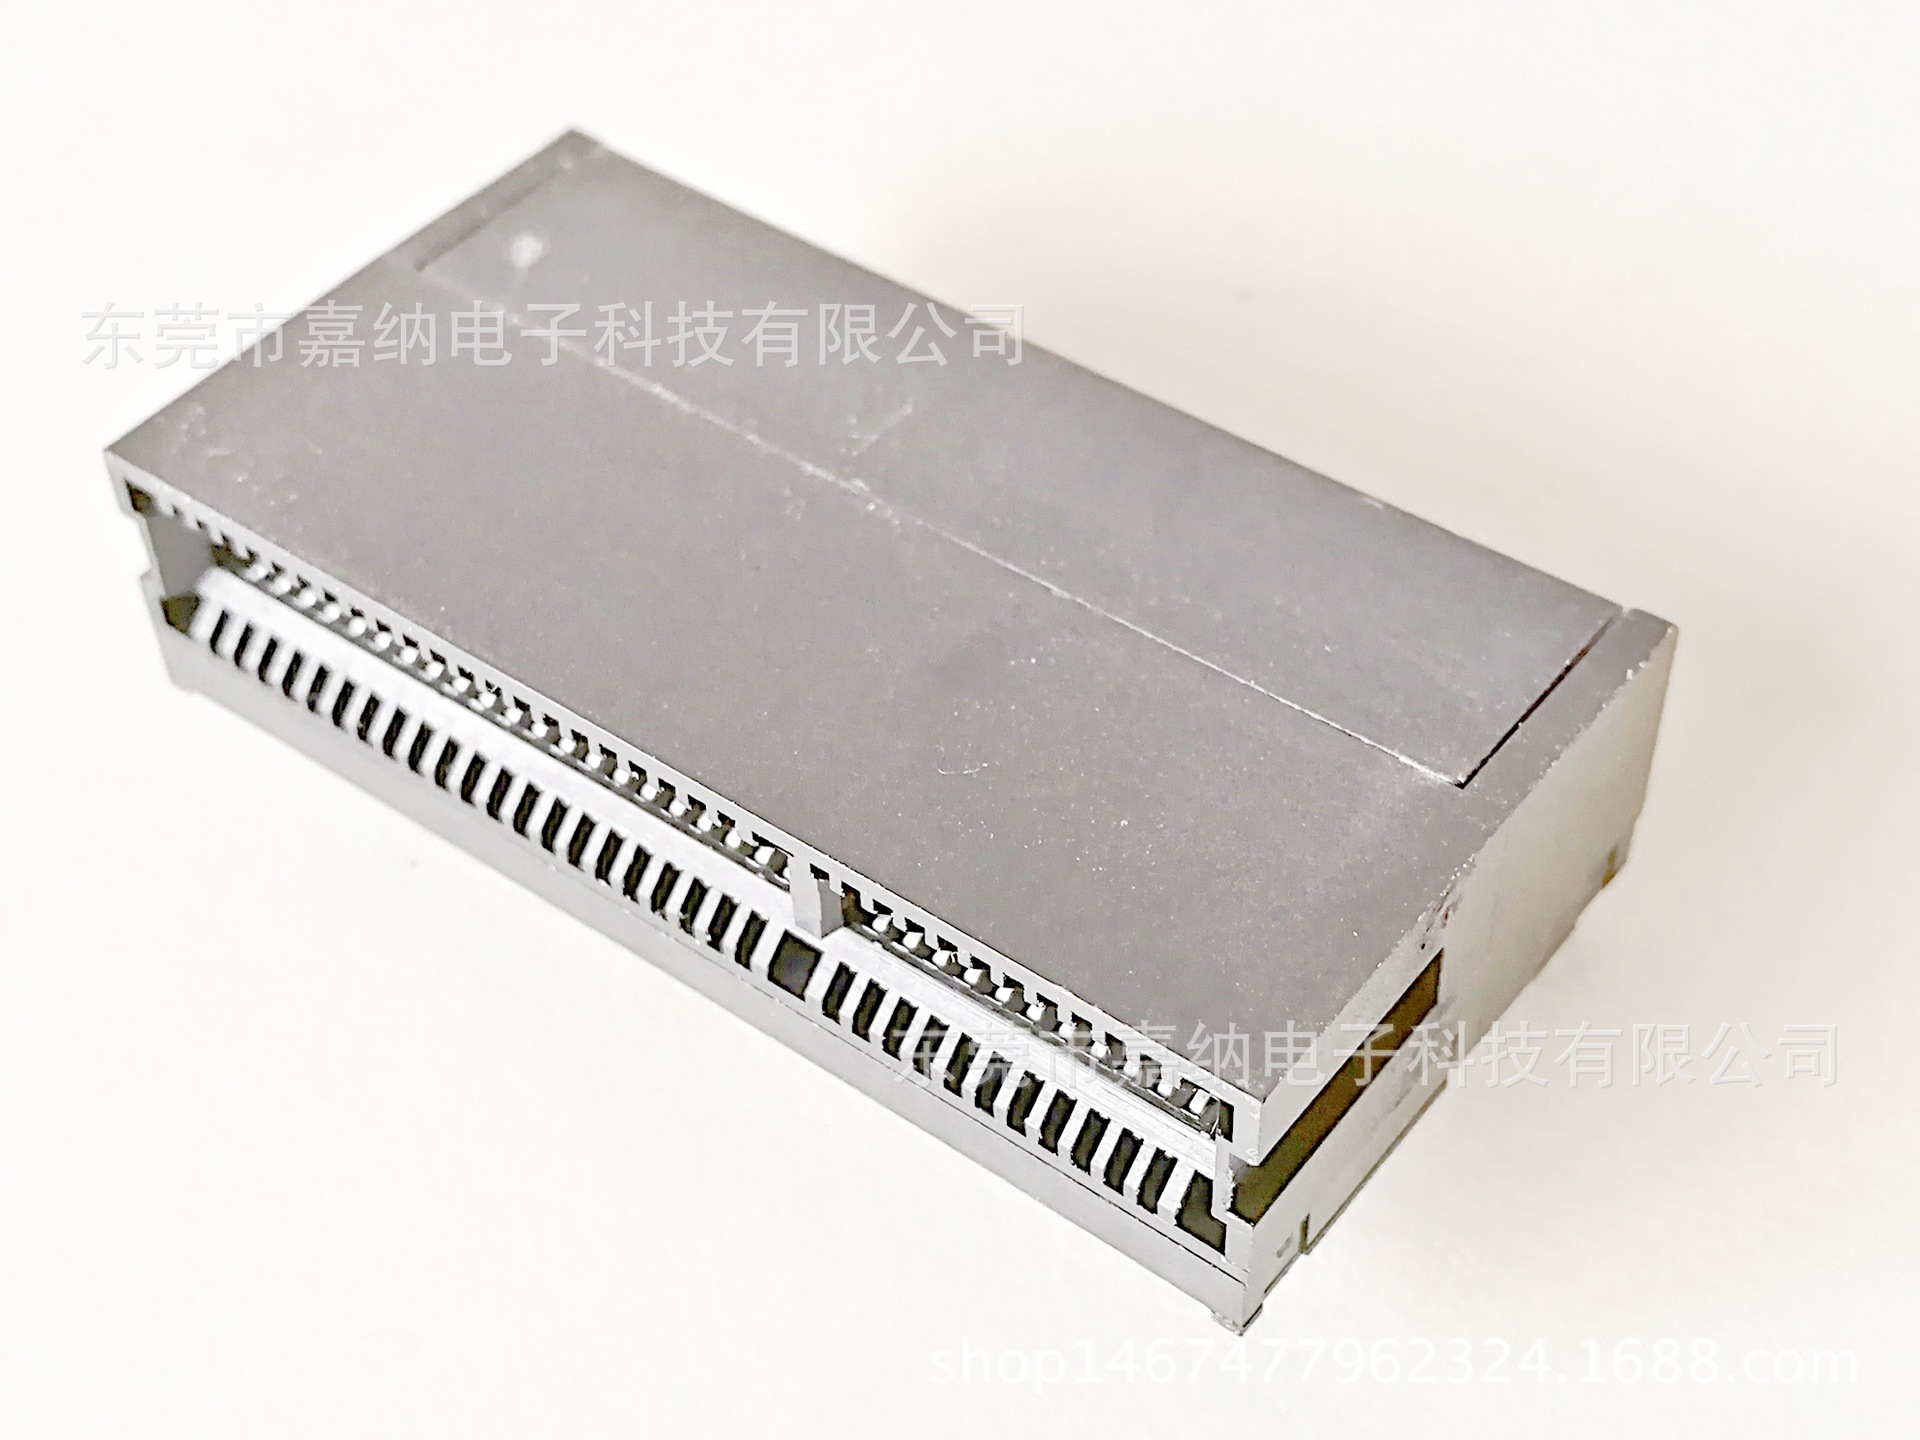 厂家直销插槽电脑显卡主板连接器PCIE间距1.0 36